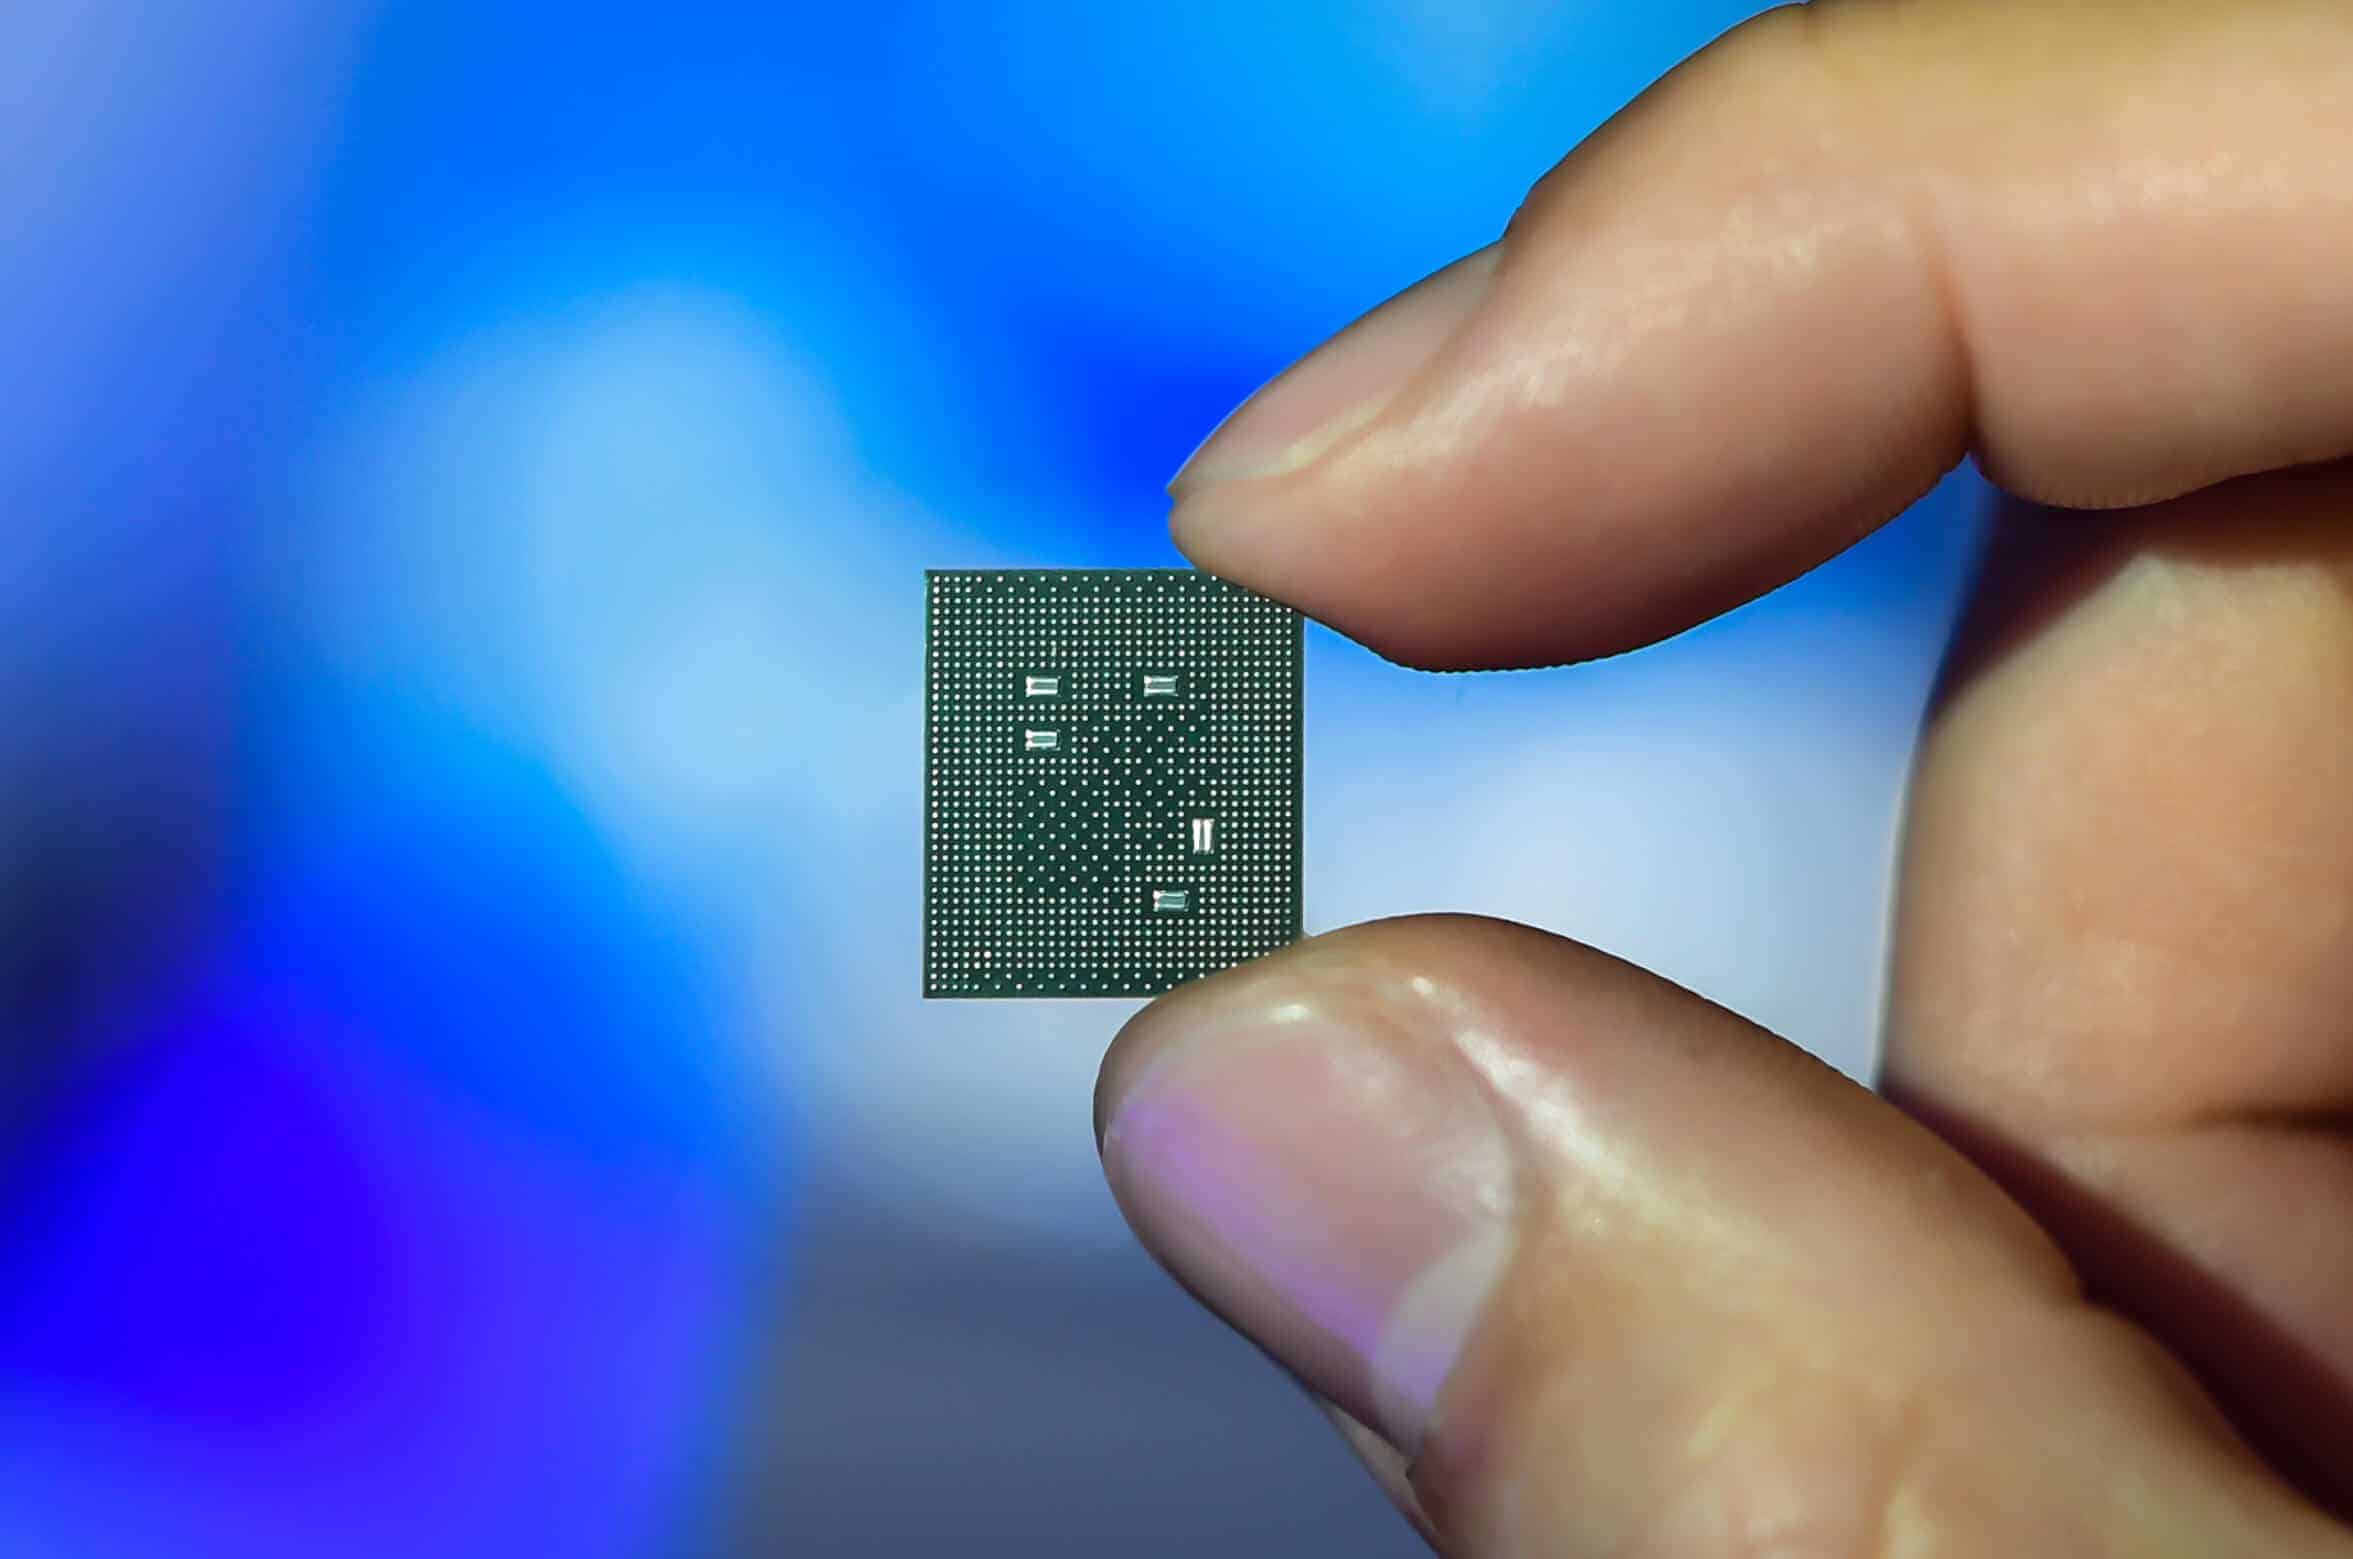 Finalmente se implanta un chip Neuralink en un ser humano